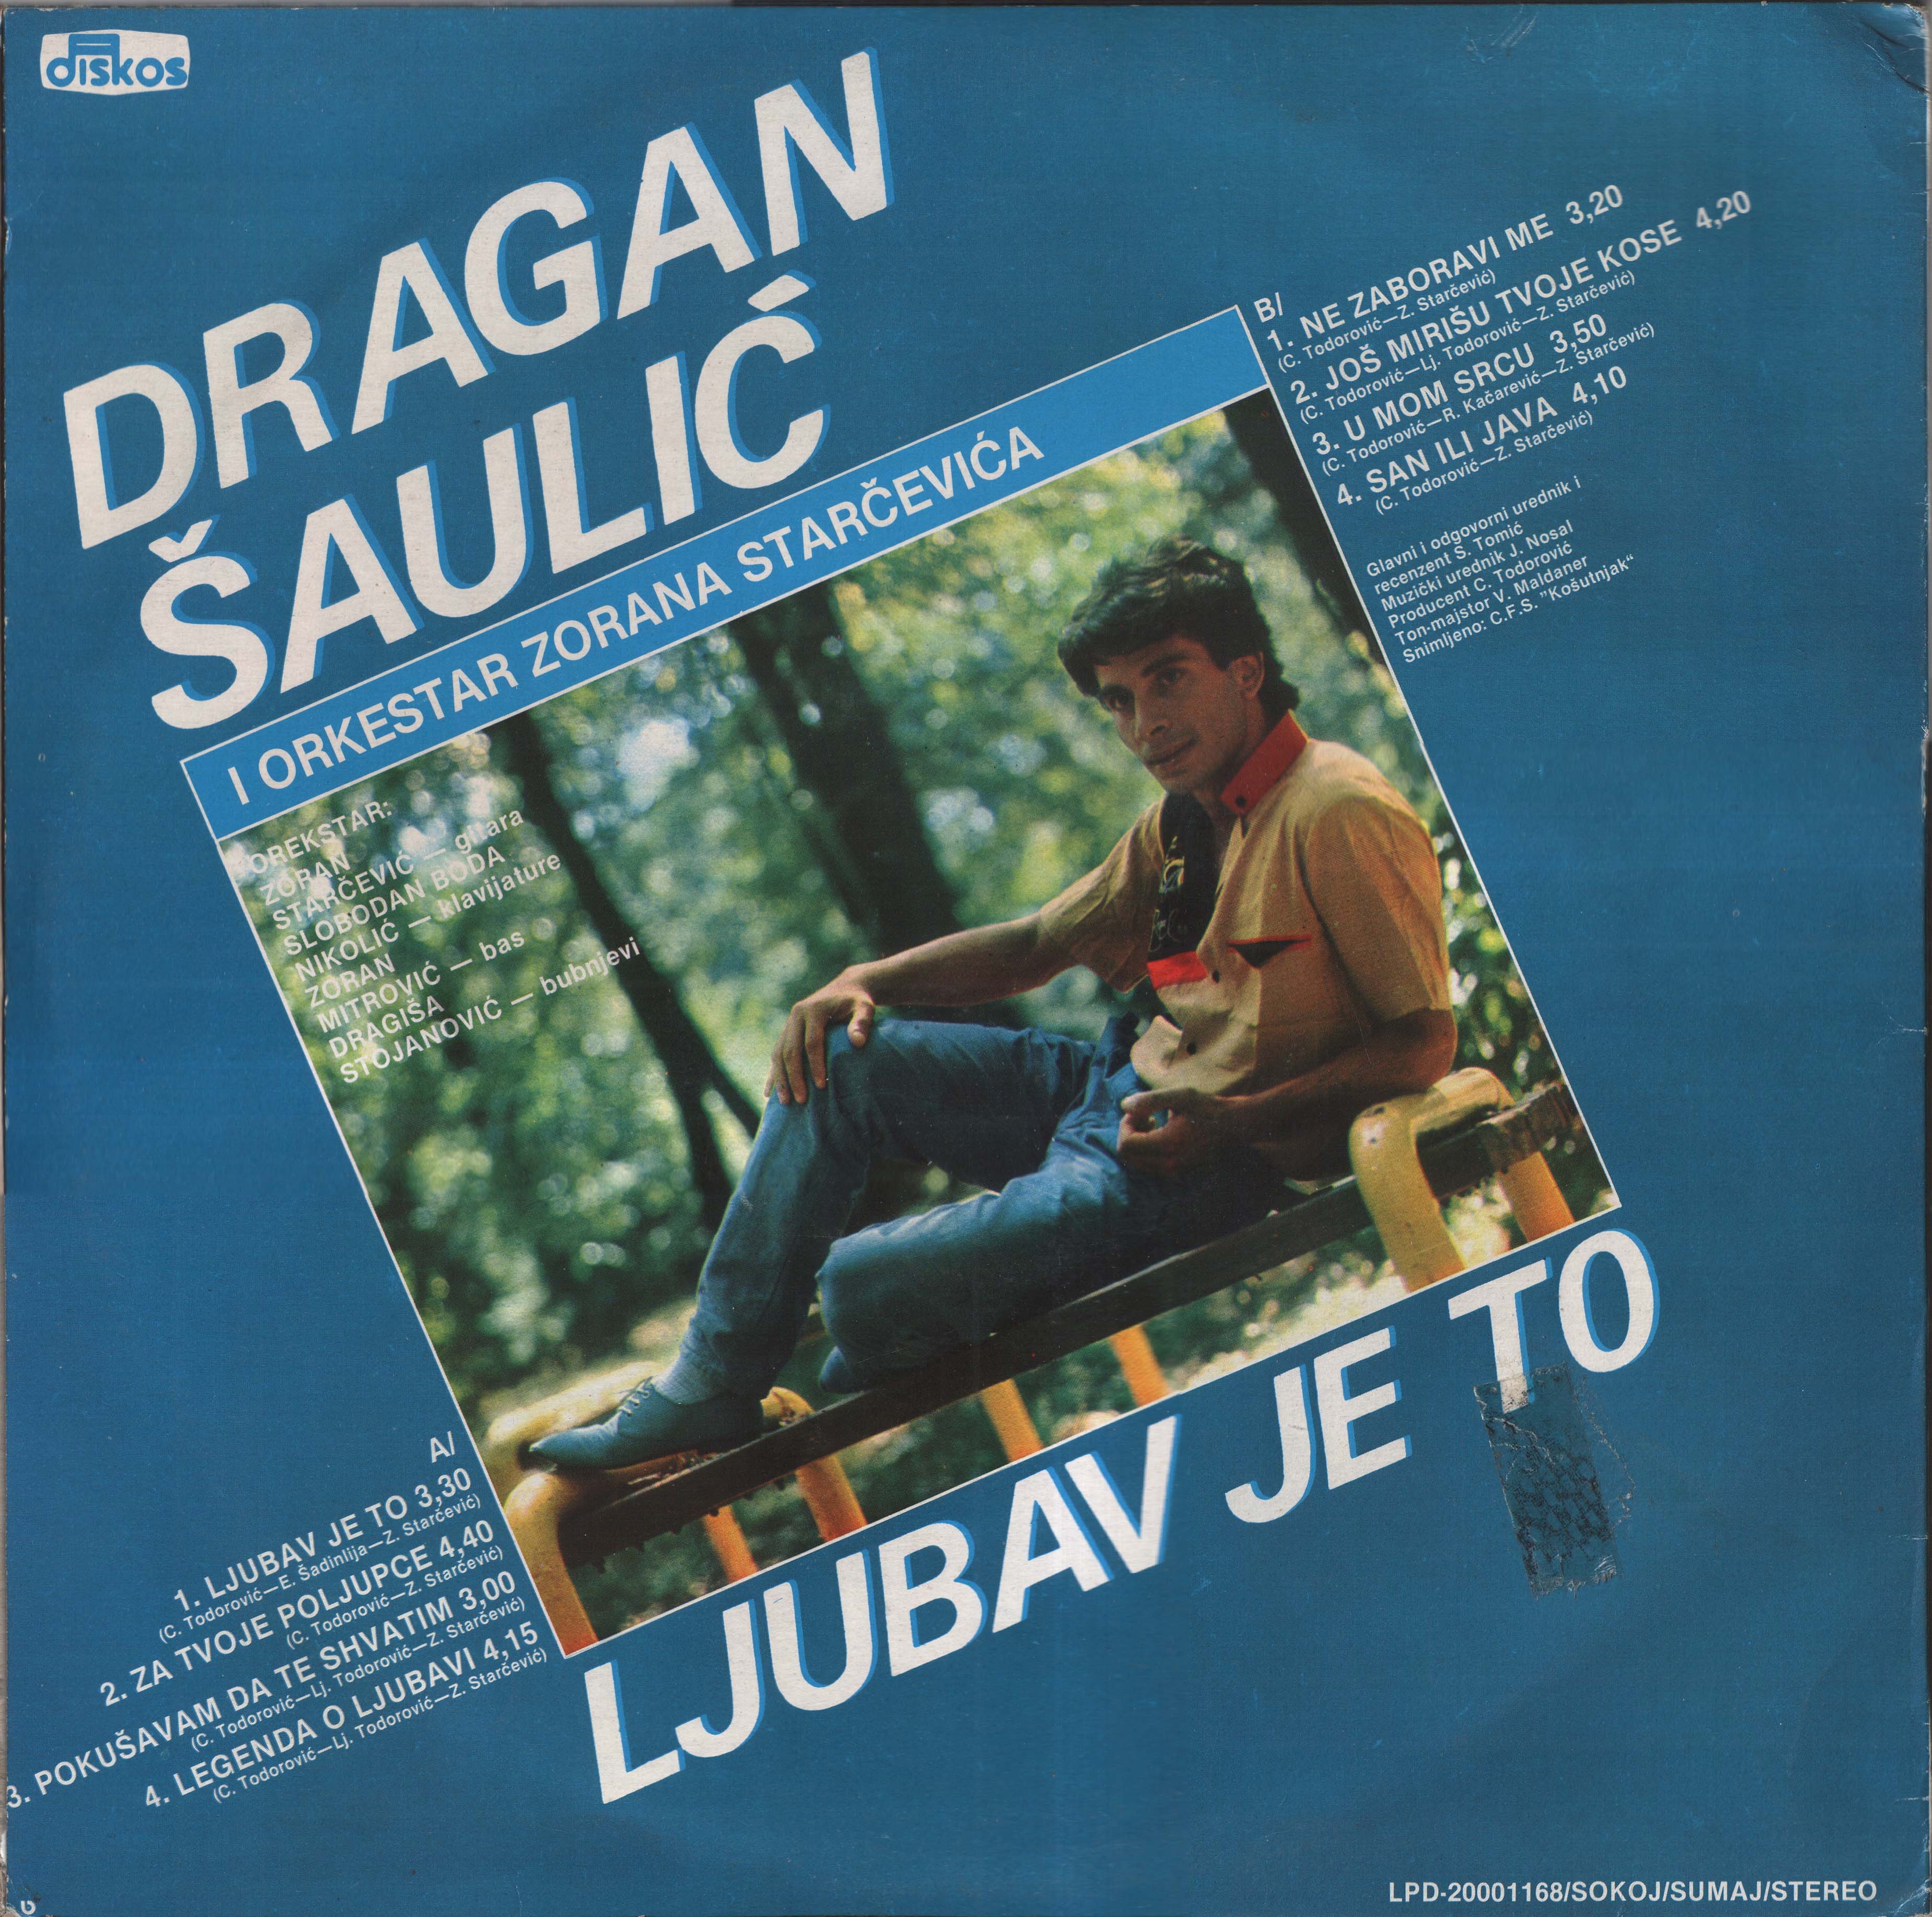 Dragan Saulic 1985 Z